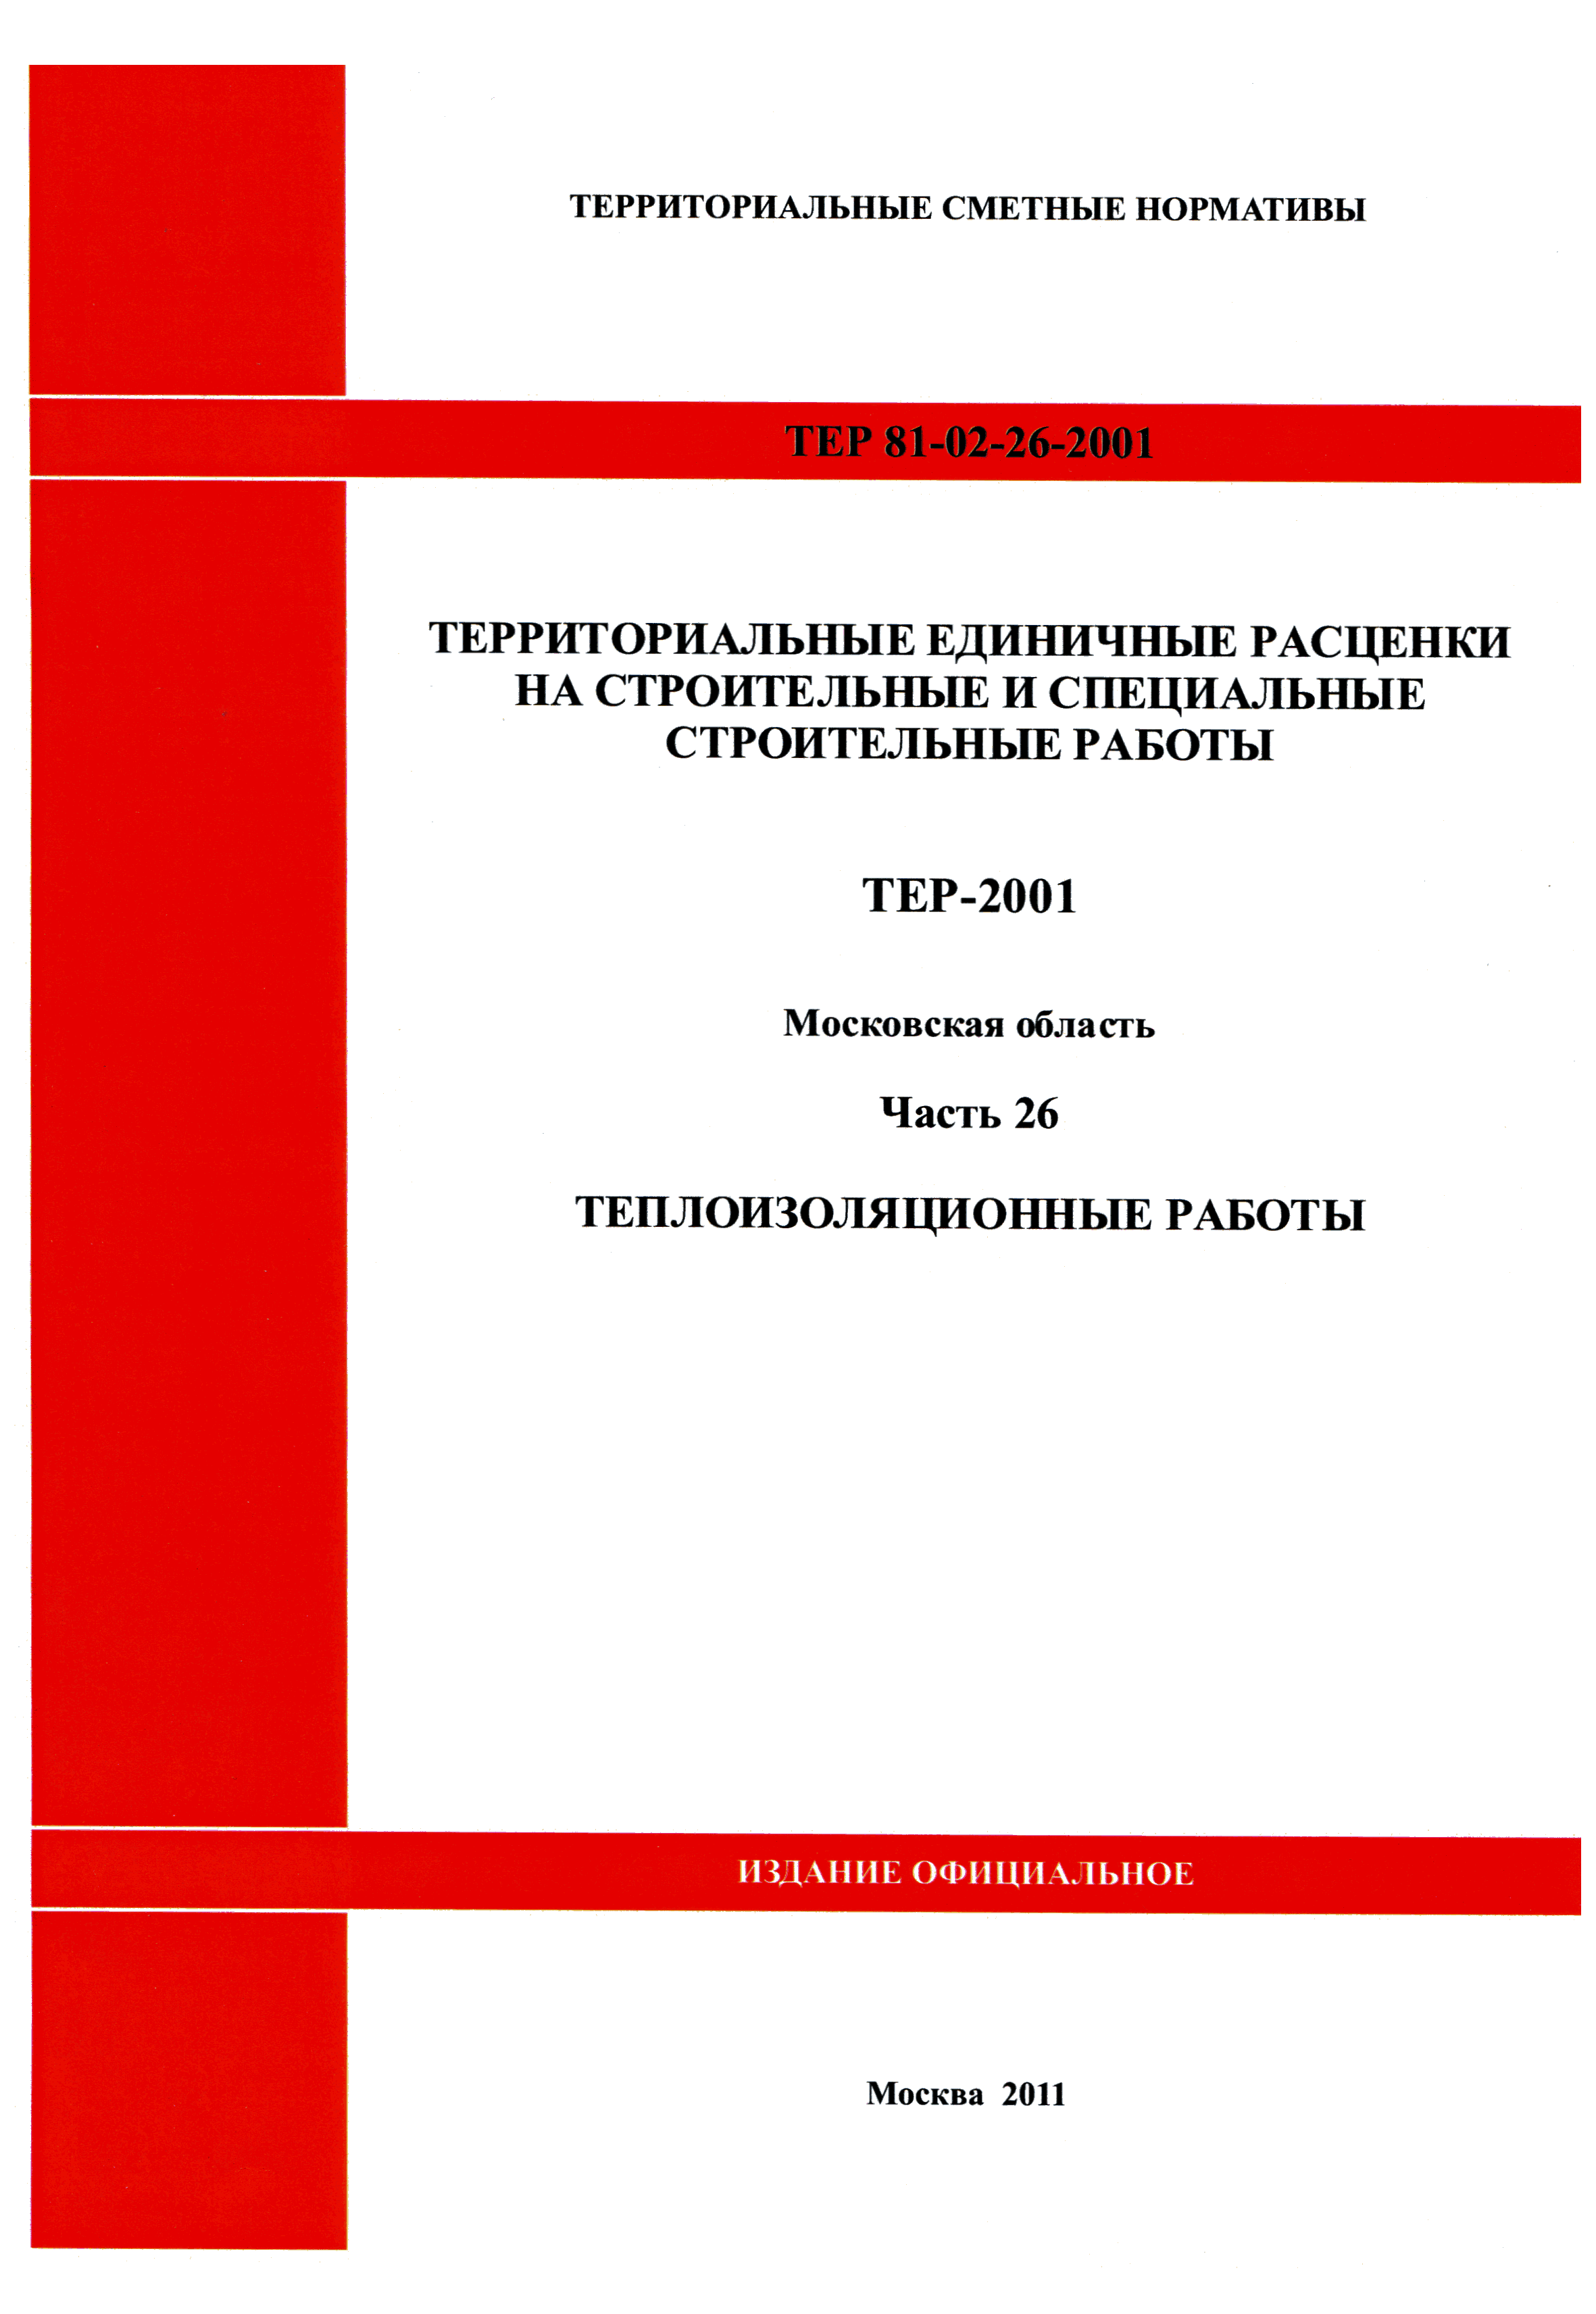 ТЕР 26-2001 Московской области